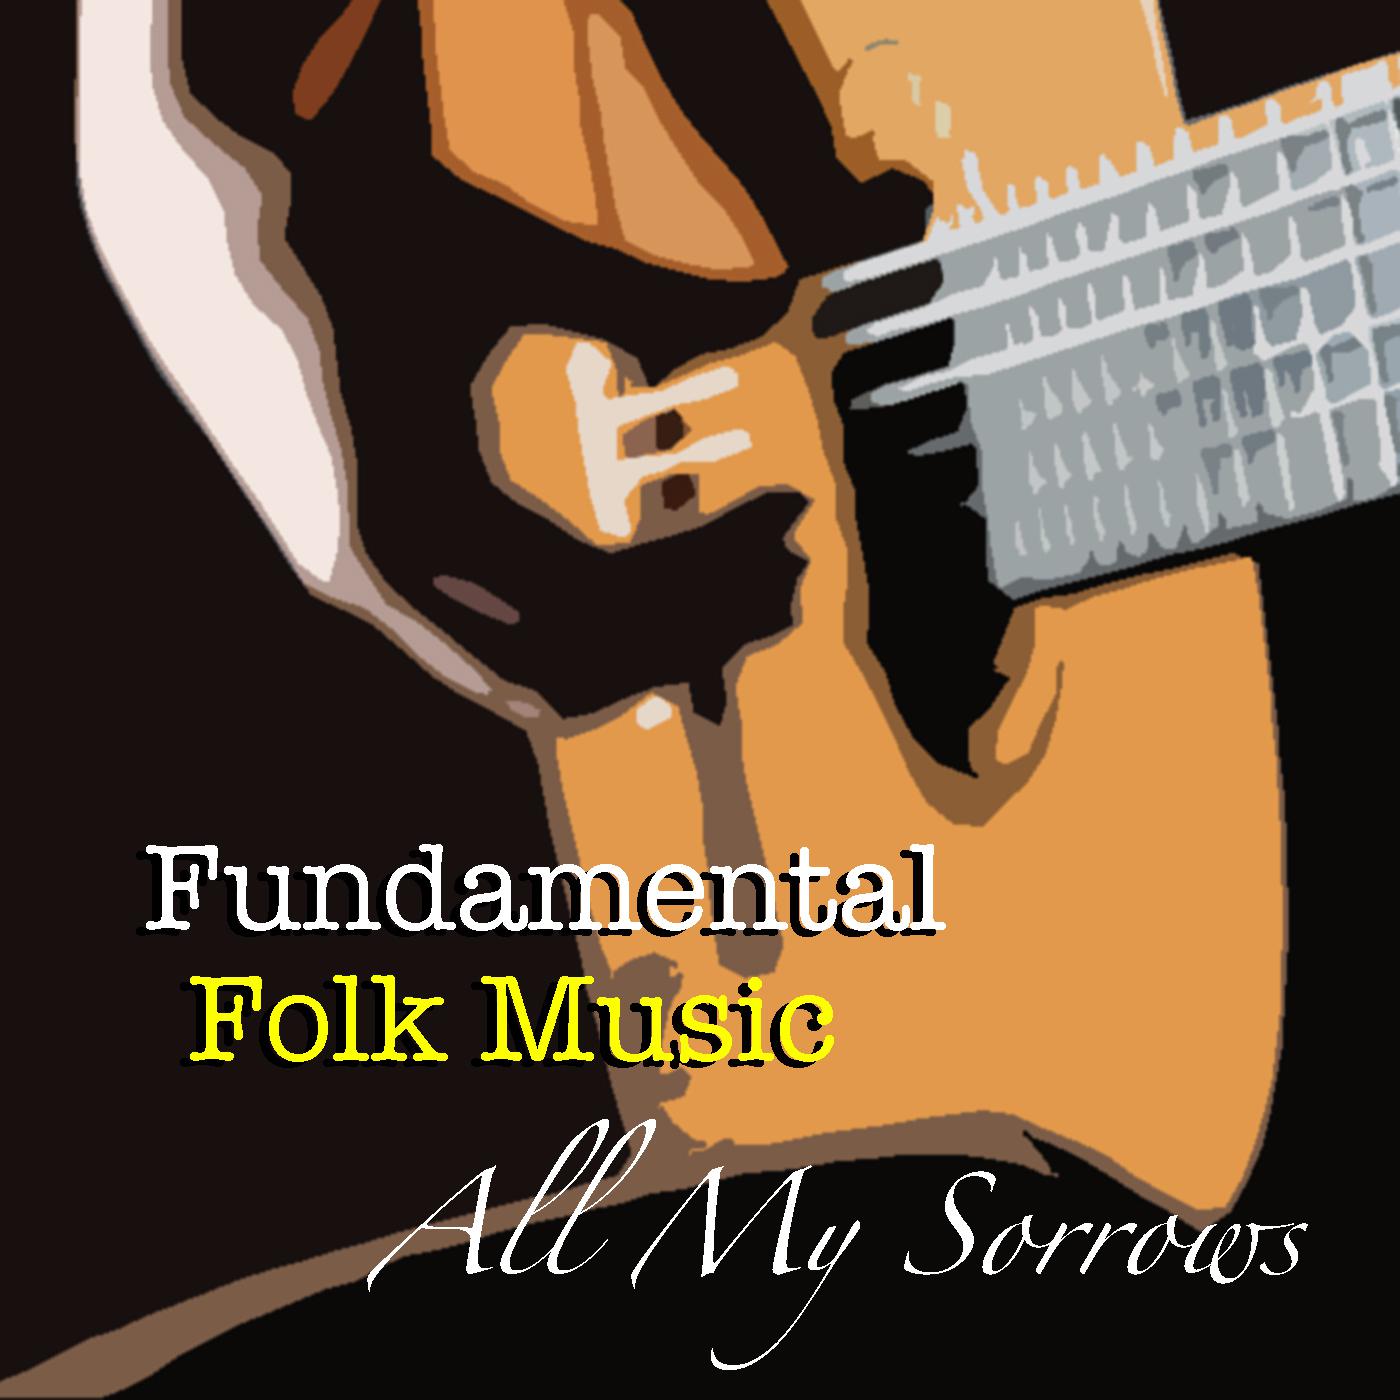 All My Sorrows Fundamental Folk Music